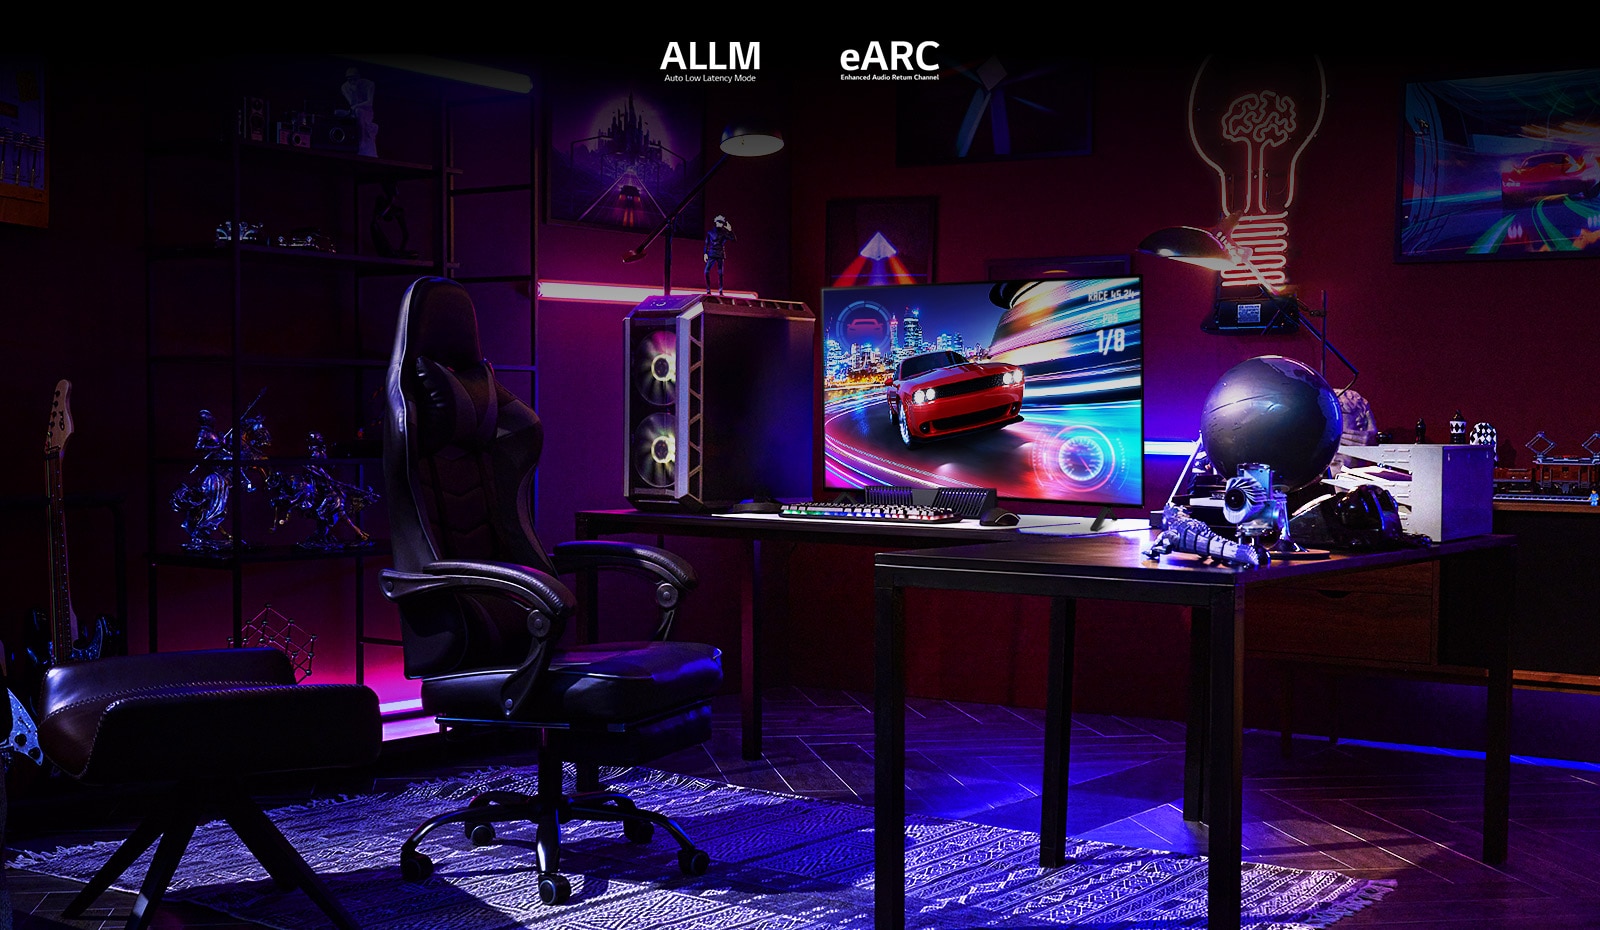 Парень играет на симуляторе вождения в игровой комнате с розовой, синей и фиолетовой RGB-подсветкой и коллекцией фигурок персонажей.